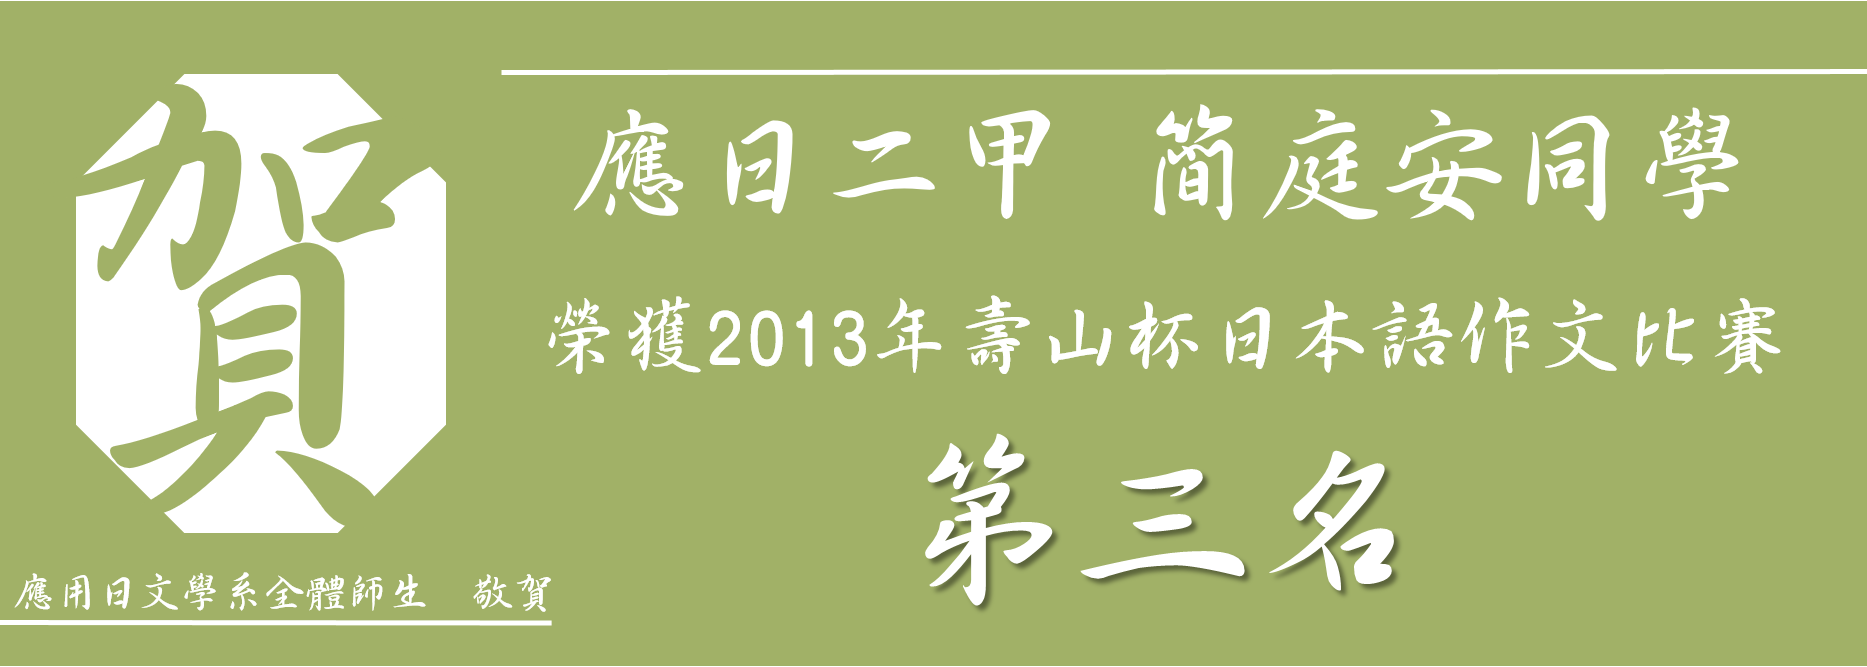 2013日語作文比賽